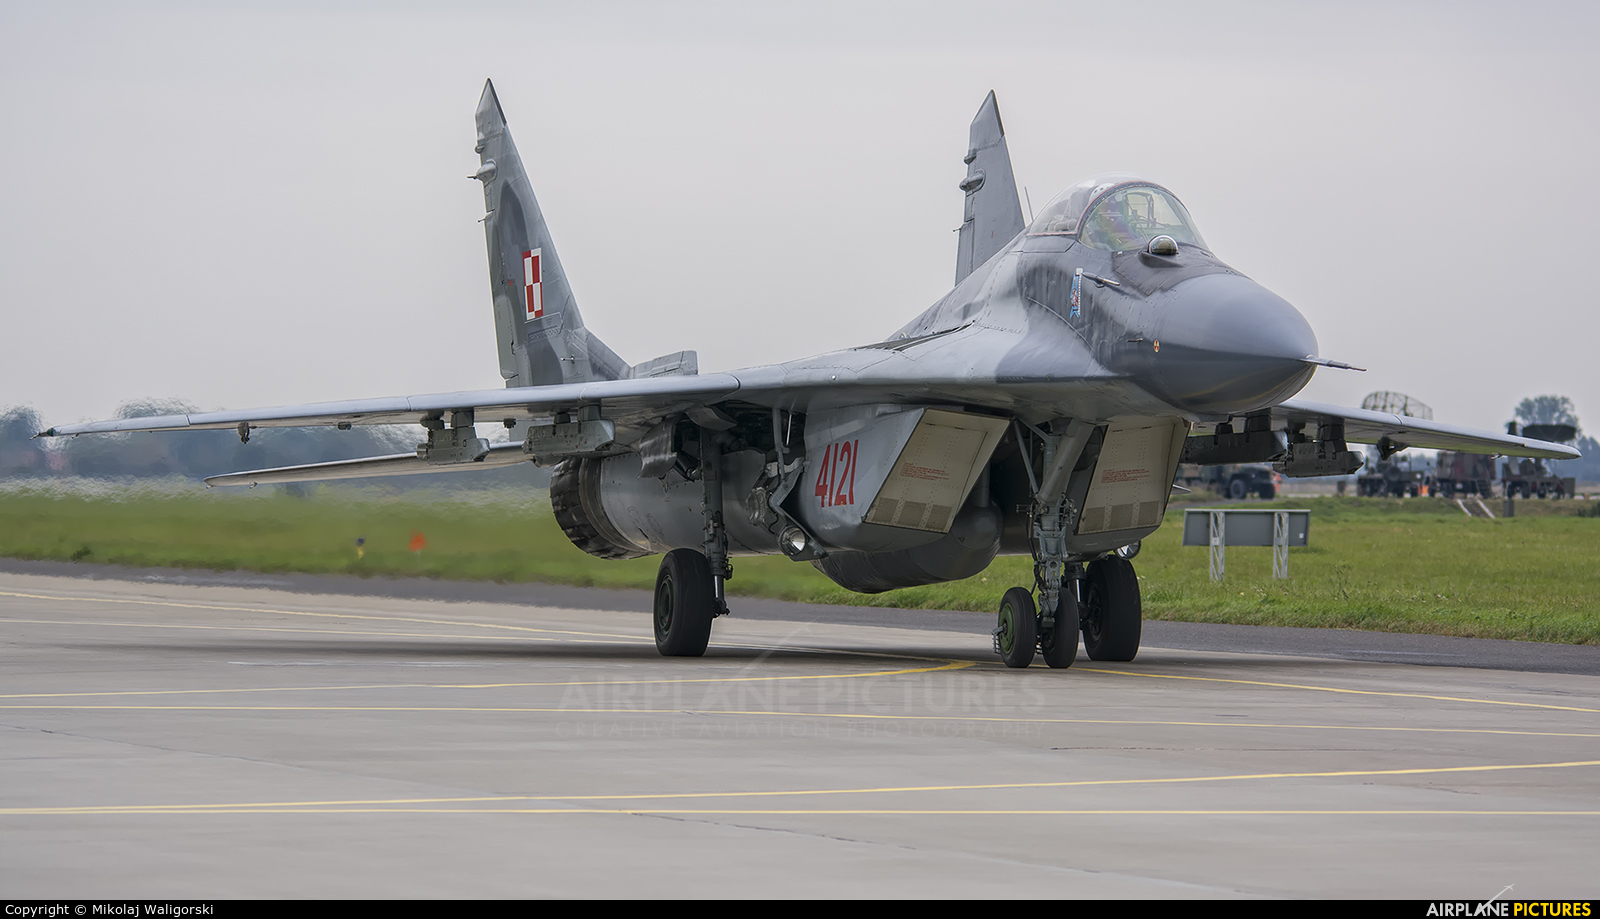 Poland - Air Force 4121 aircraft at Malbork